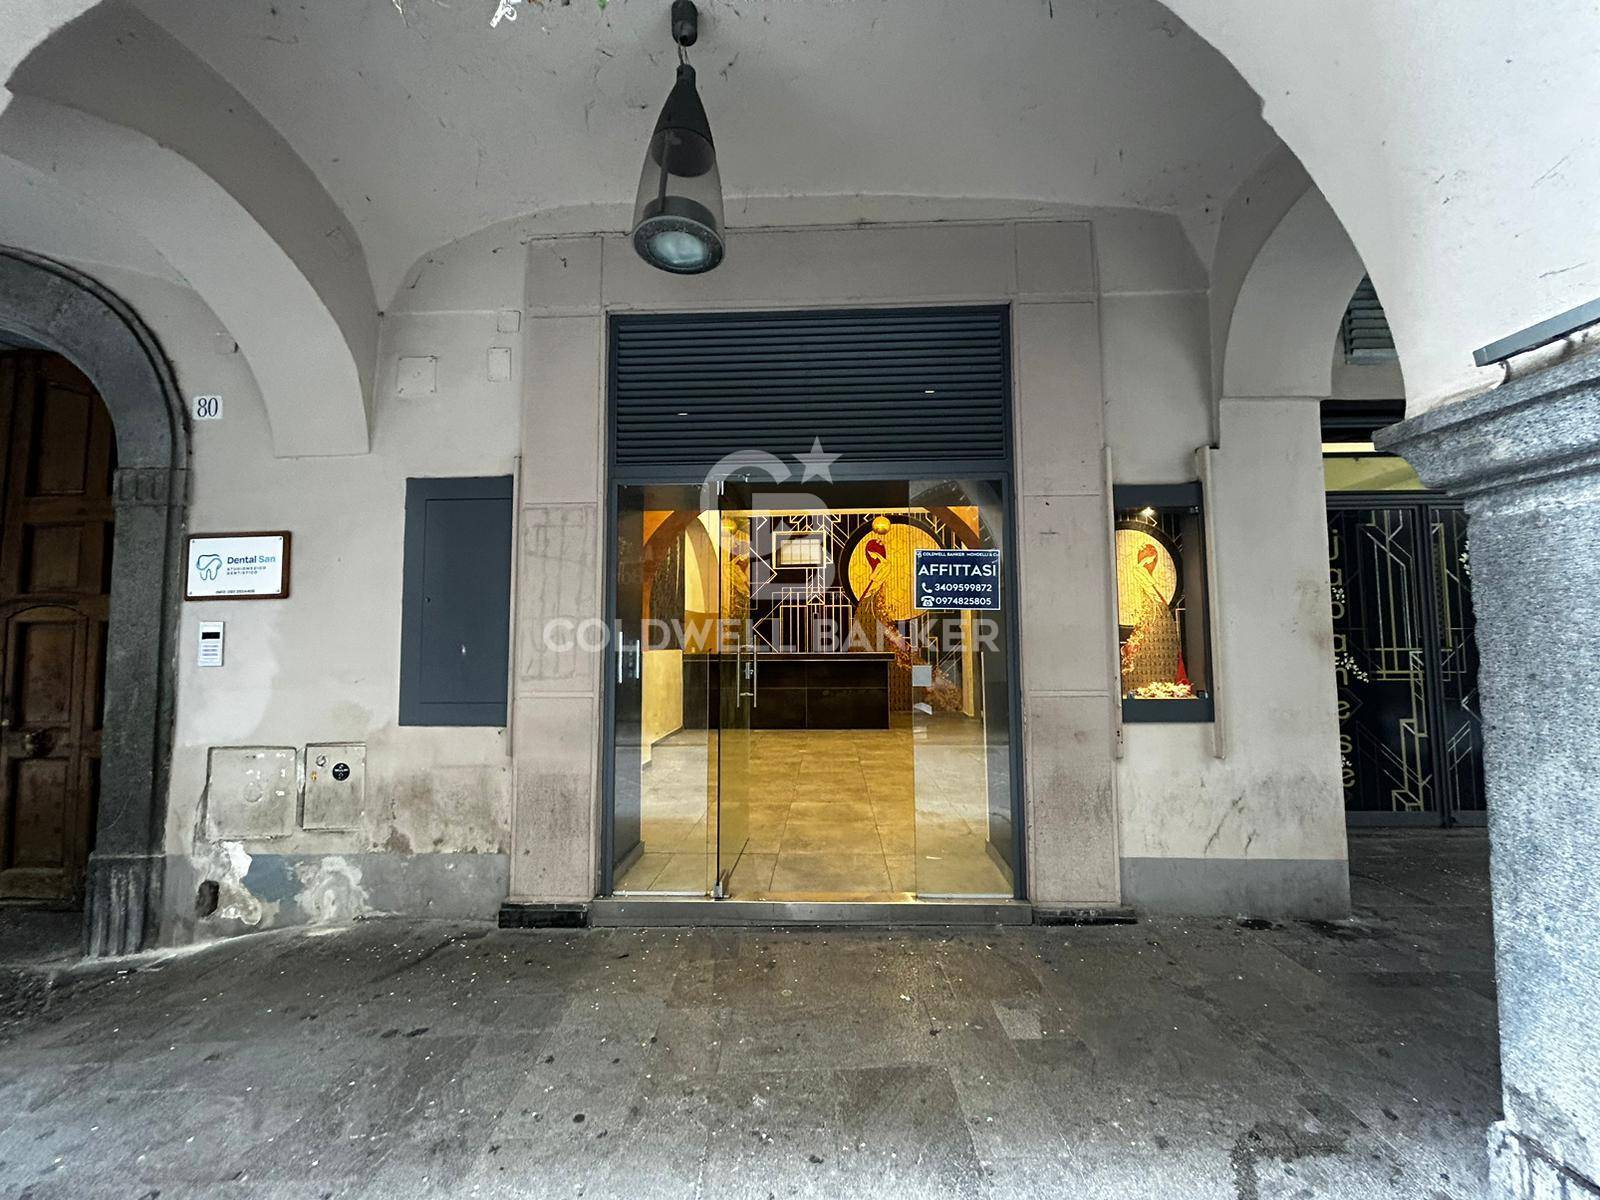 Locale commerciale in affitto a Cava de' Tirreni